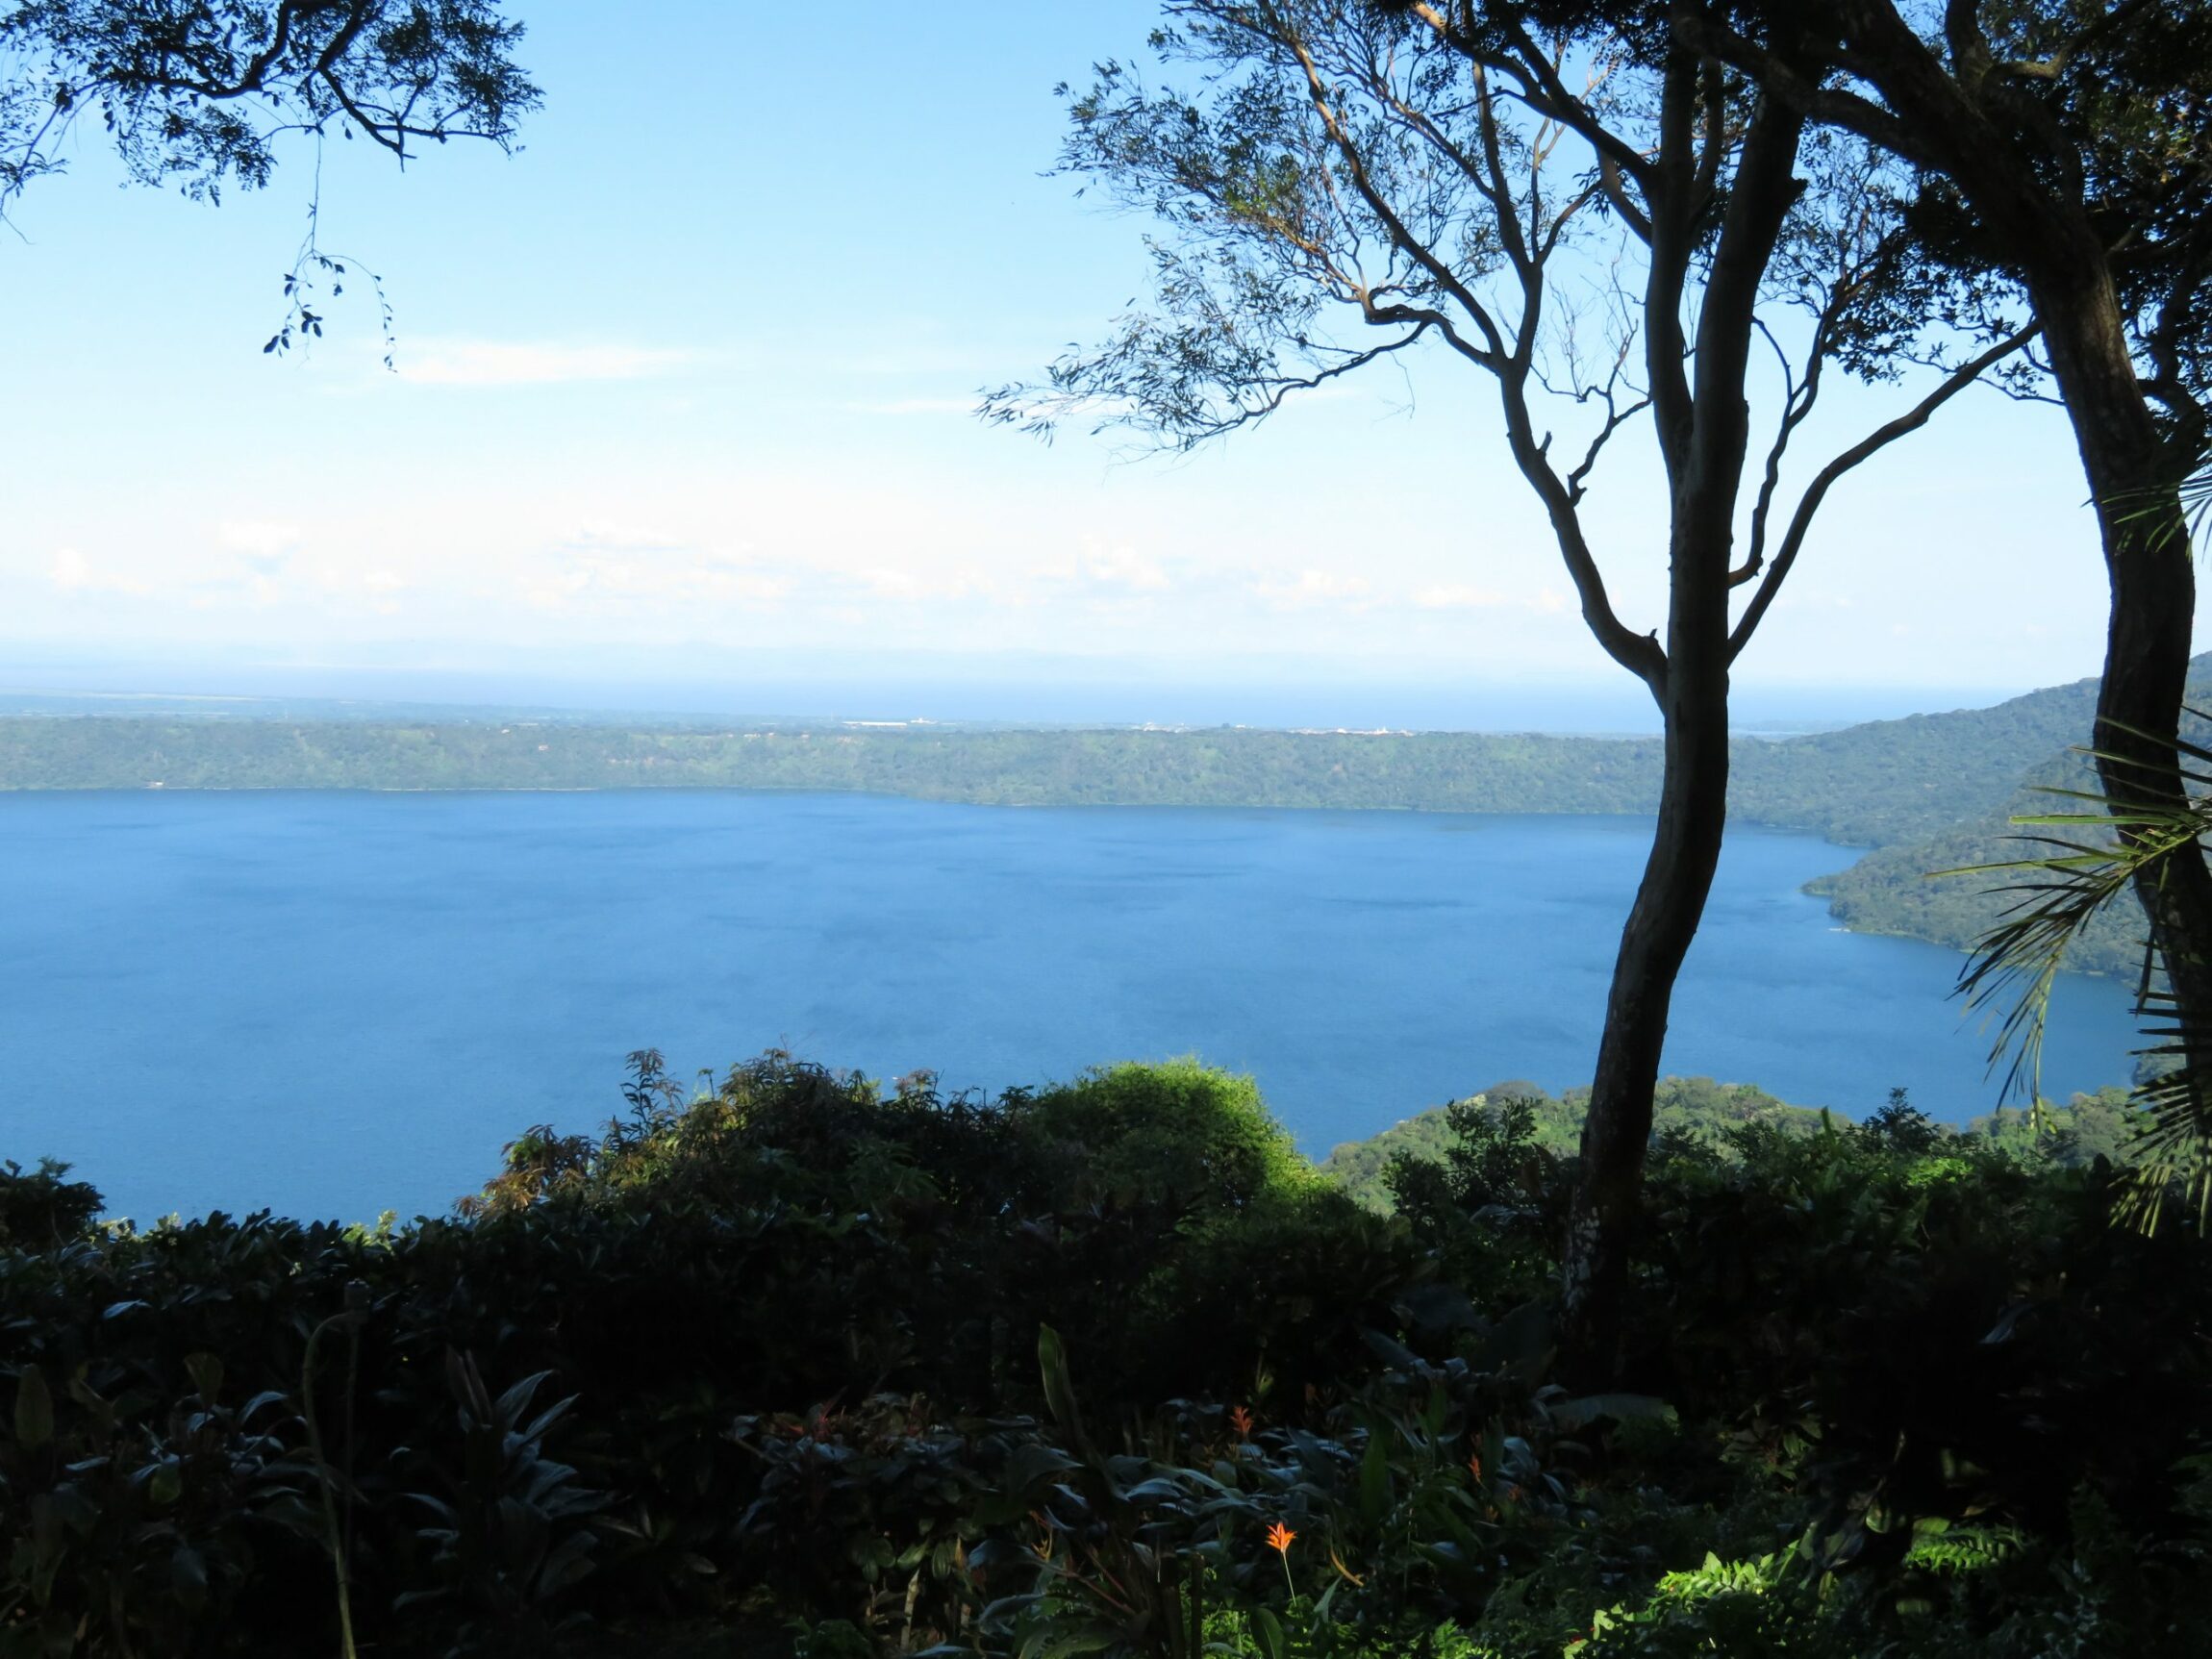 Four casitas Overlooking Laguna de Apoyo